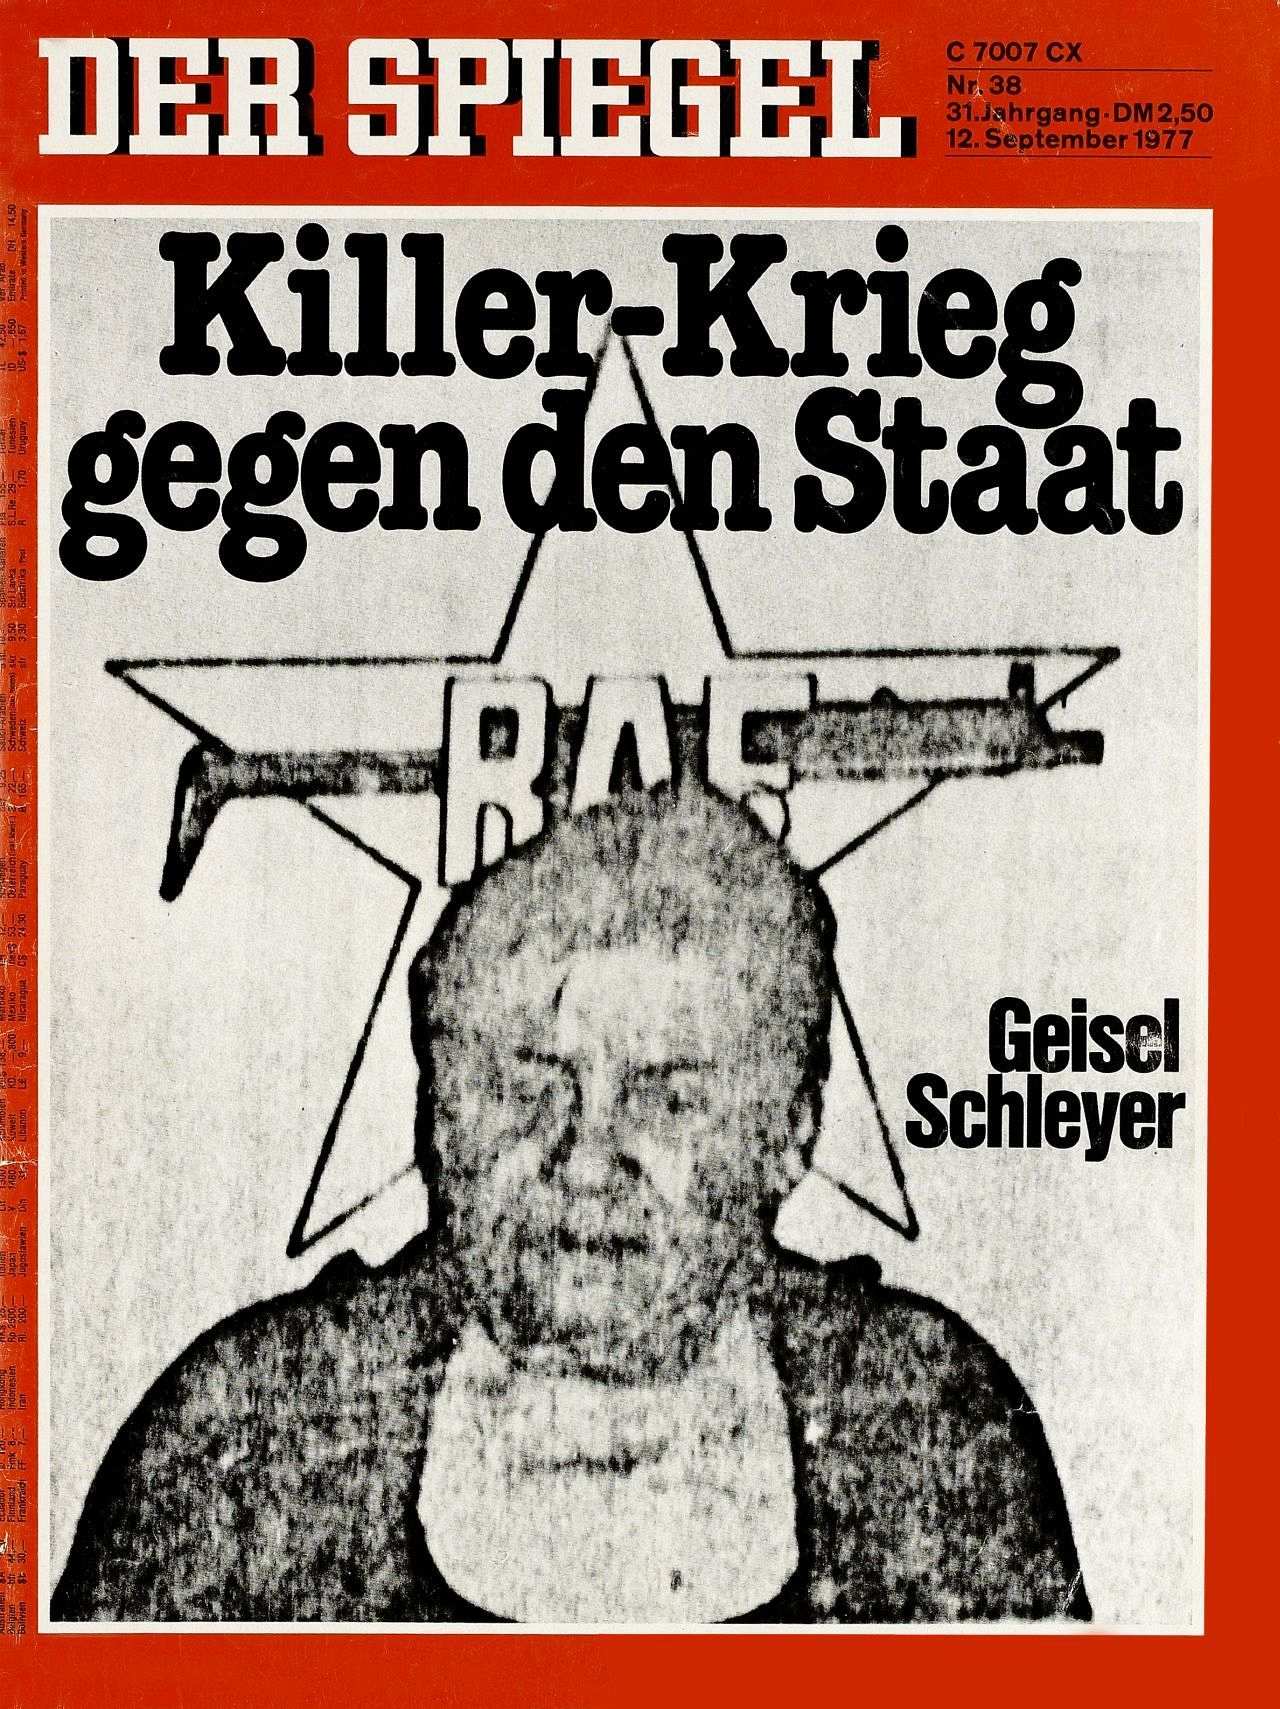 Auf dem Spiegel-Titelblatt Schwarzweiß-Foto mit dem Entführungsopfer Hanns Martin Schleyer, zu sehen vom Schulterbereich an aufwärts, im Hintergrund Abbildung des RAF-Emblems; schwarze Titelschlagzeilen: Killer-Krieg gegen den Staat und Geisel Schleyer.